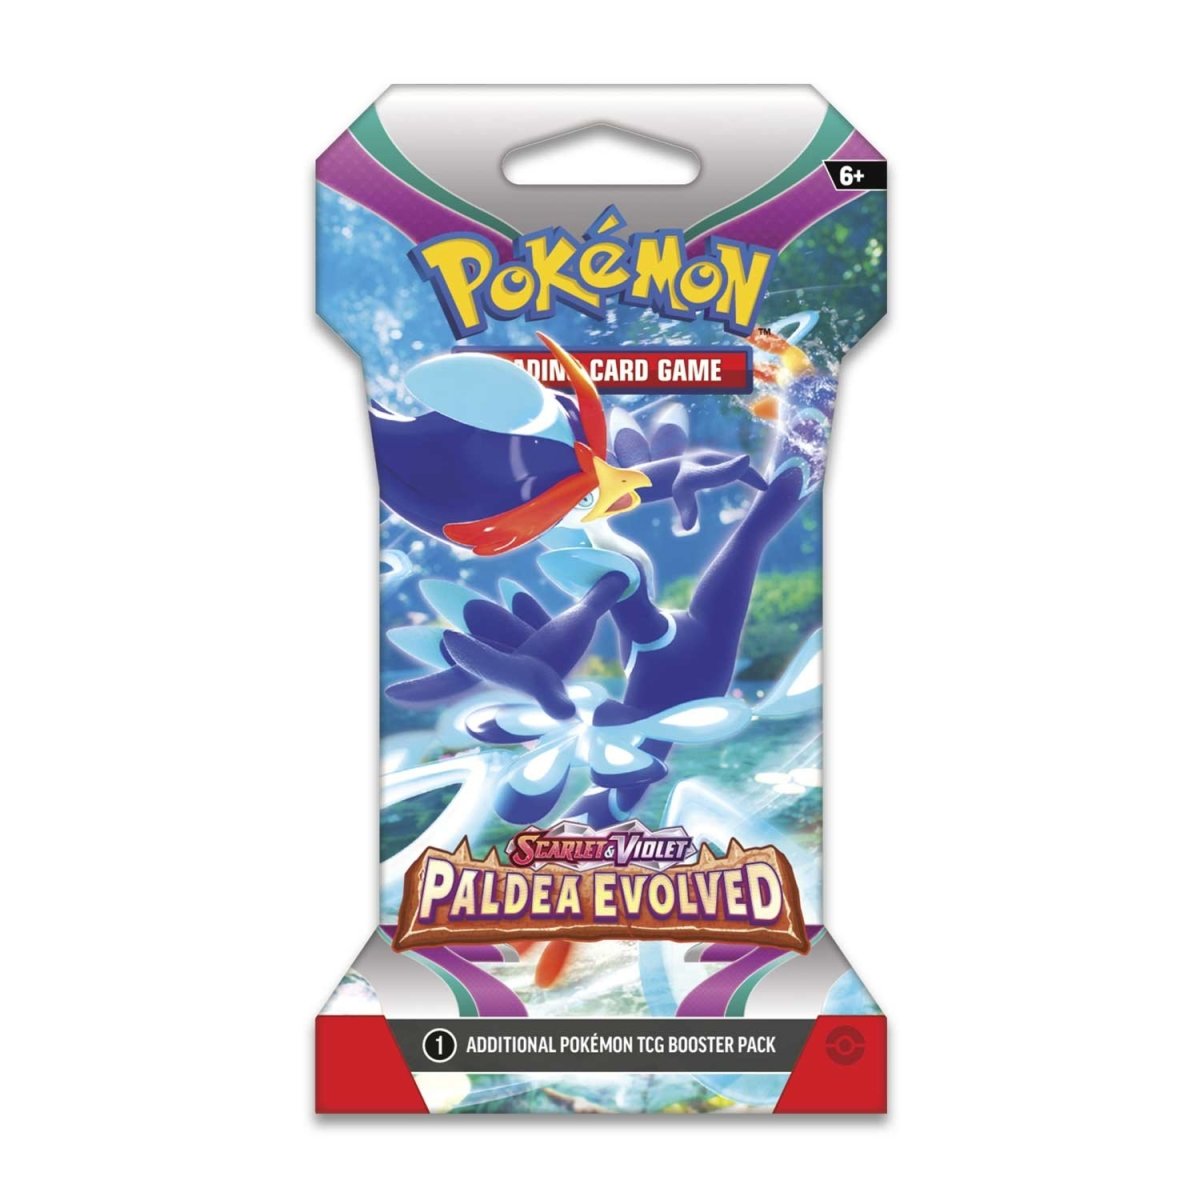 Pokémon - Scarlet & Violet: Paldea Evolved Sleeved Booster